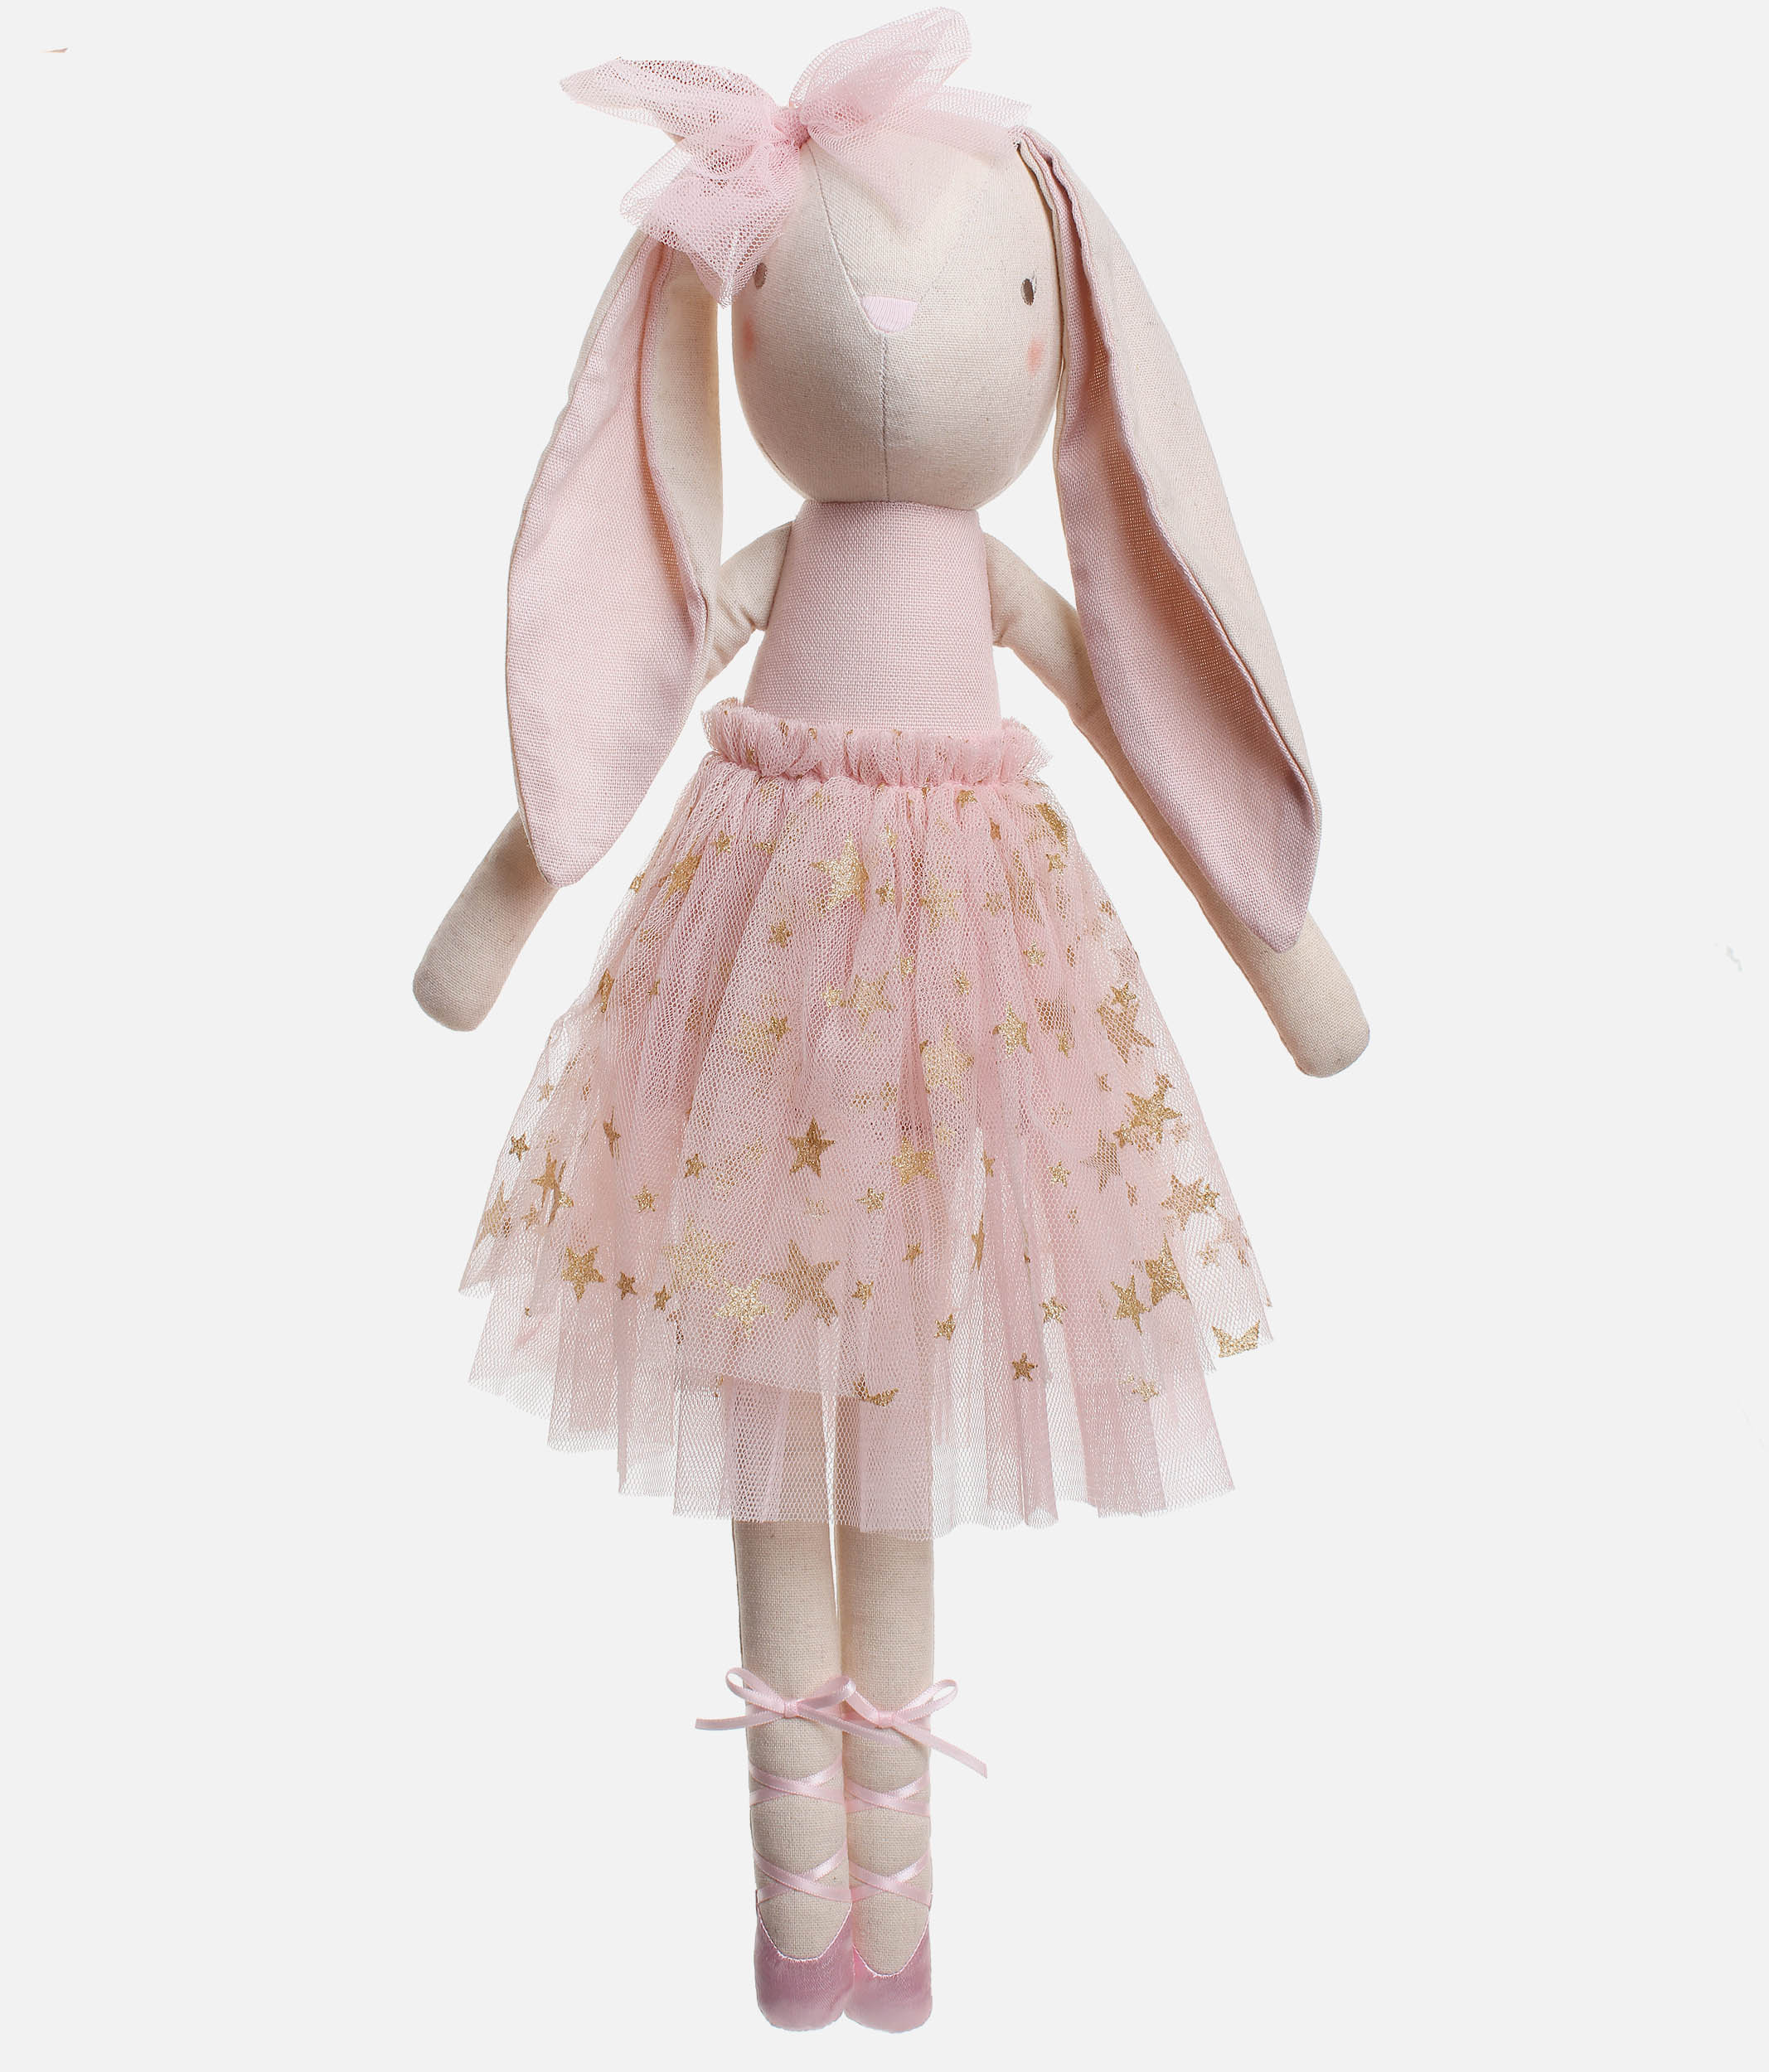 Pale Pink Bronte Ballerina Bunny Doll - N11542PP